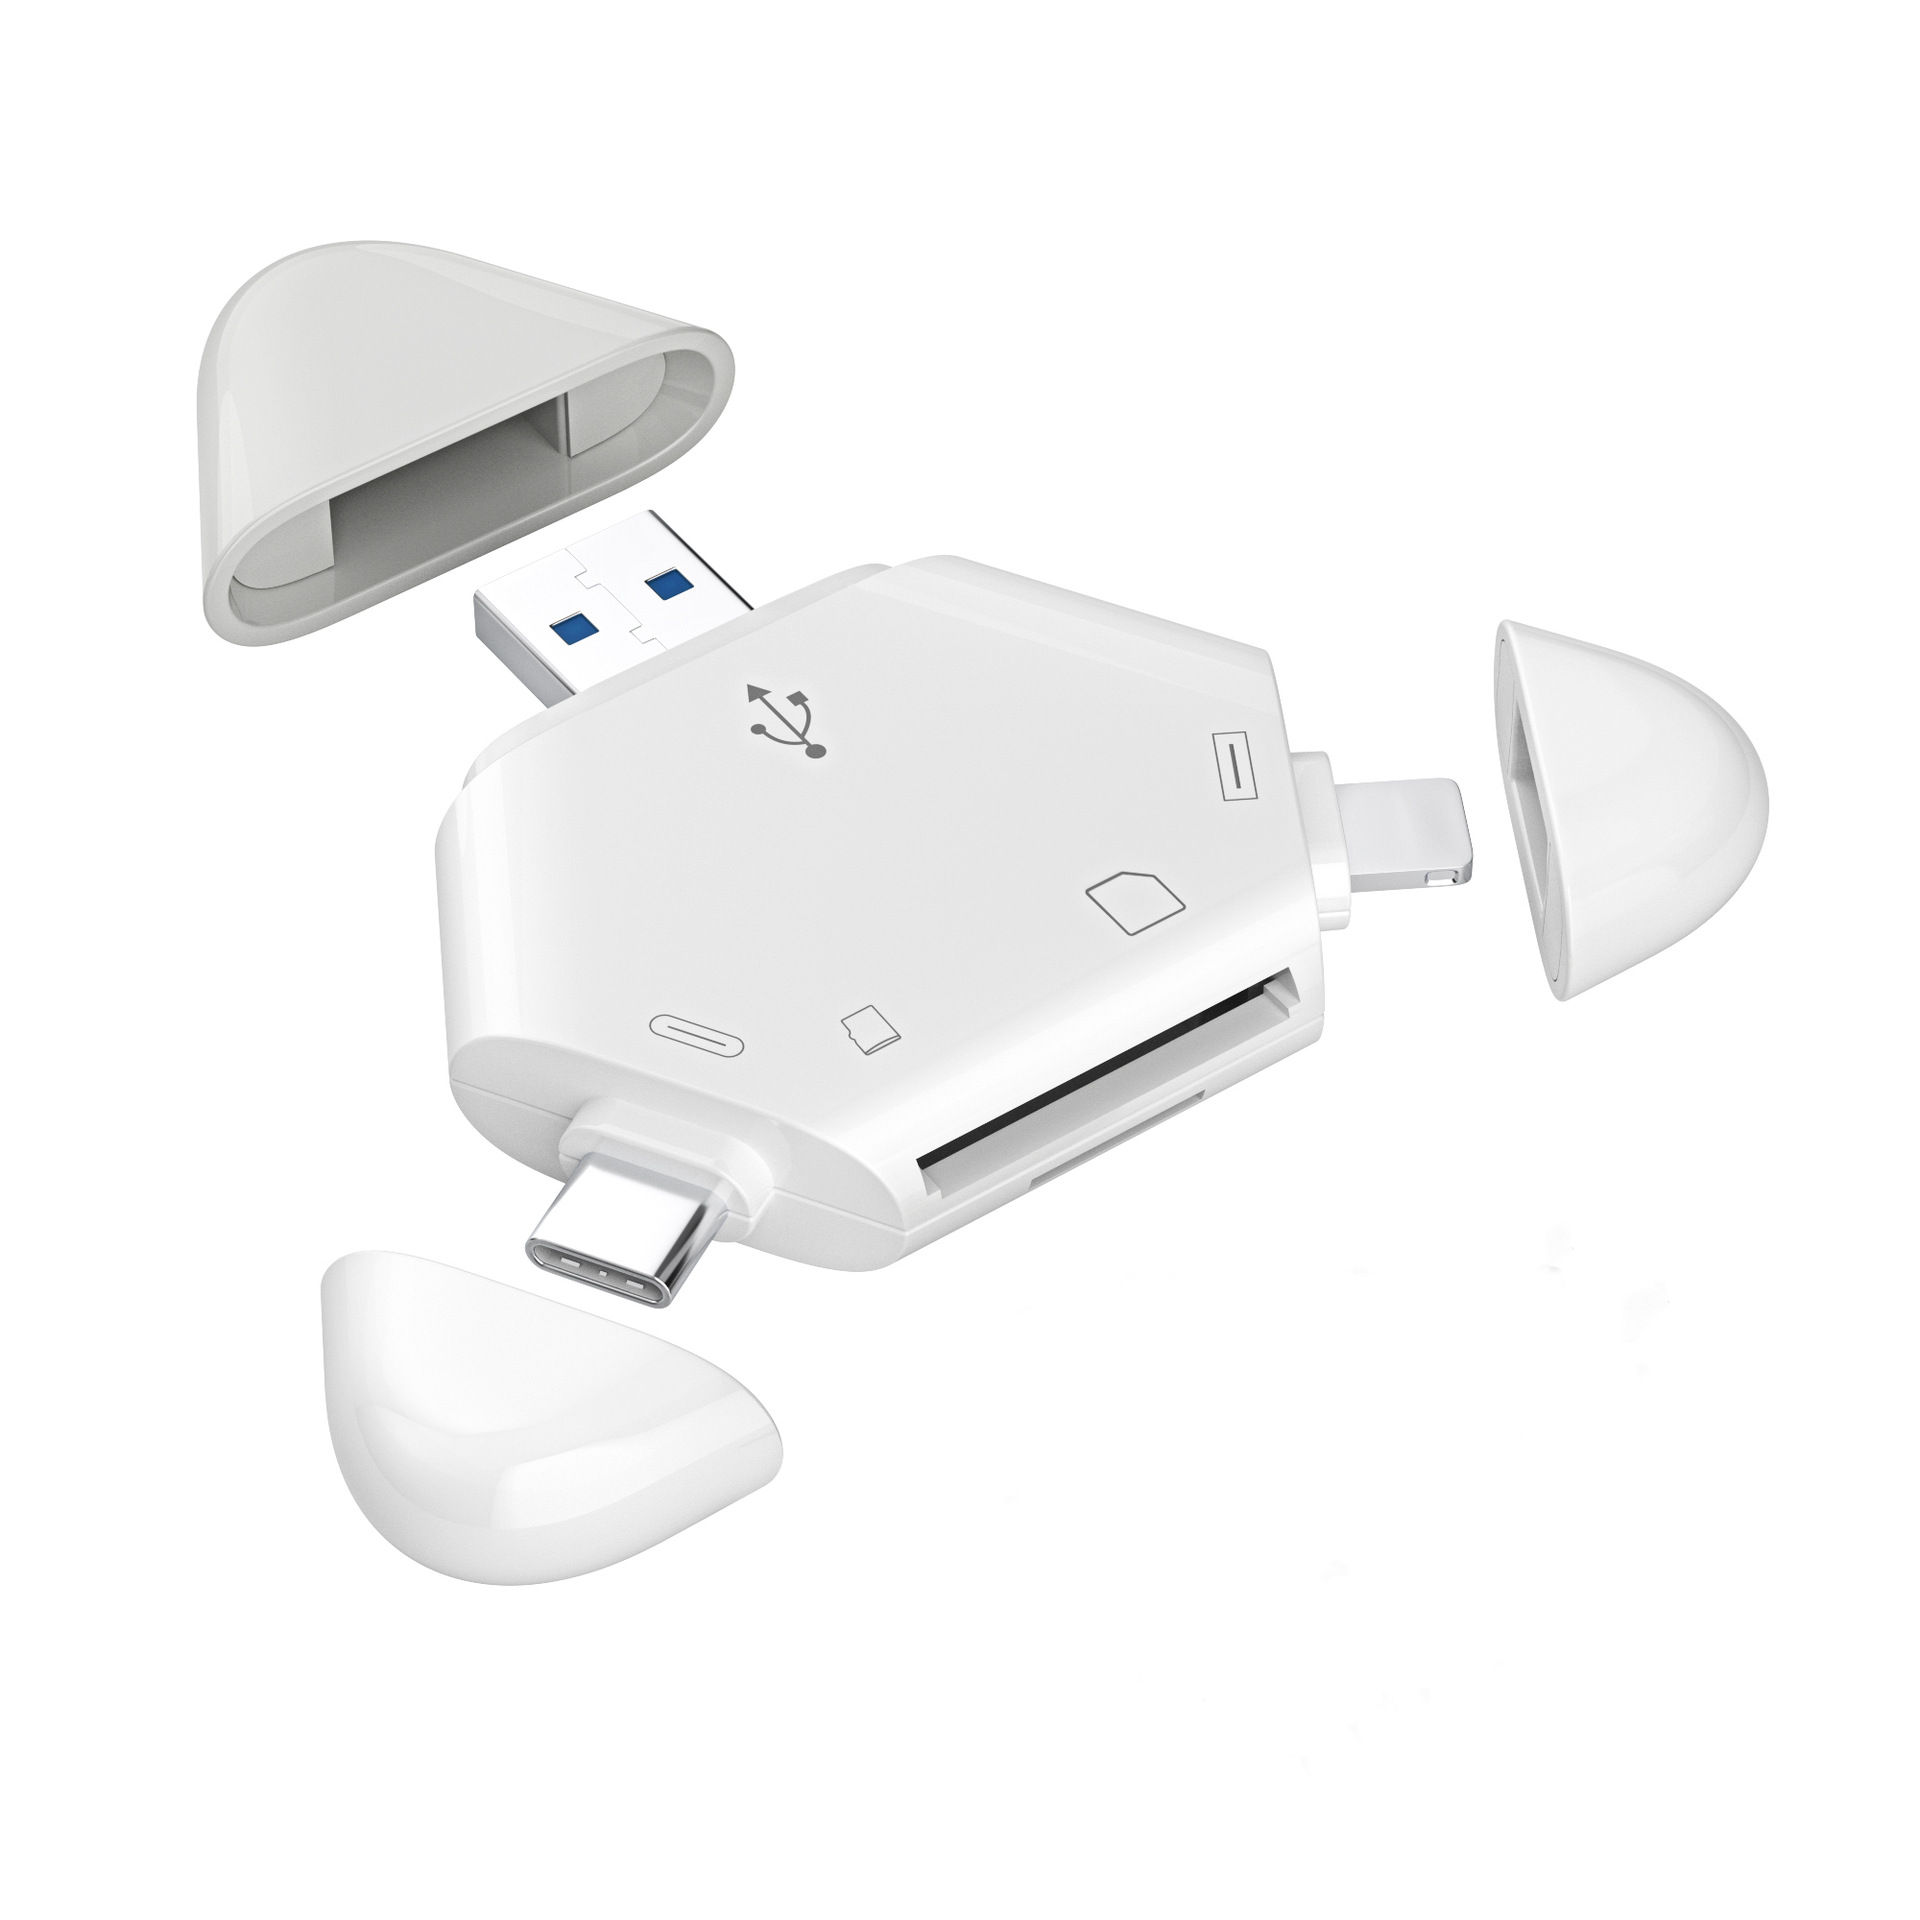 OTG Apple Magnetkartenleser SD/TF Kartenleser Mobiltelefon/Type-C/USB für Computer Kartenleser Android SYNTEK Tablet